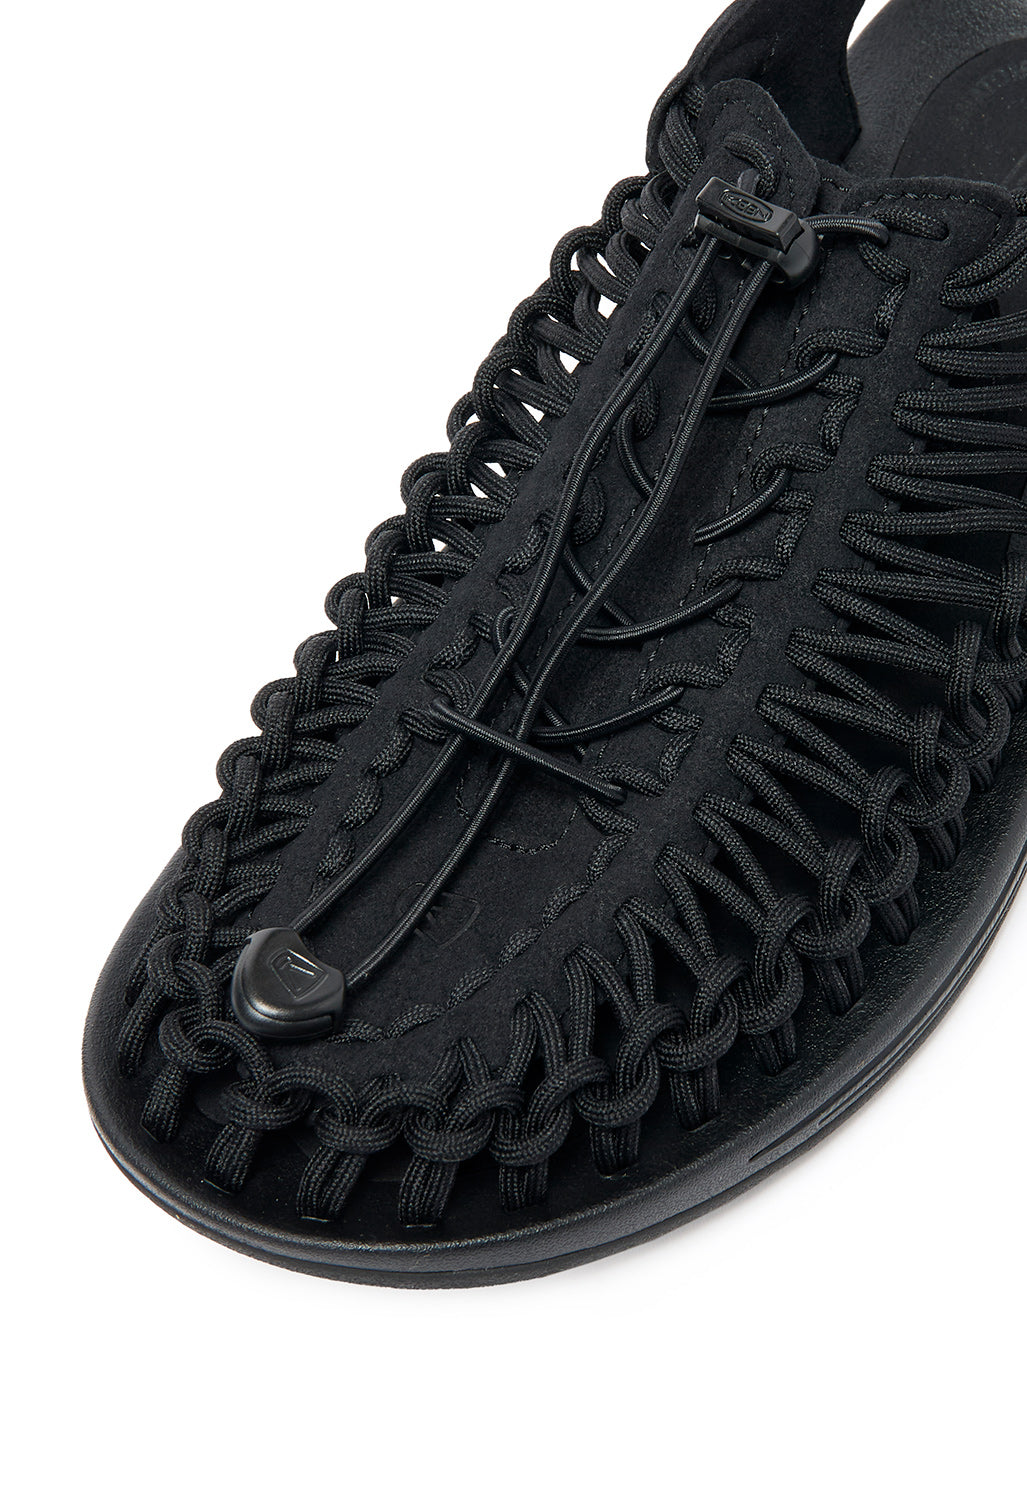 Keen Uneek Men's Sandals - Black / Black